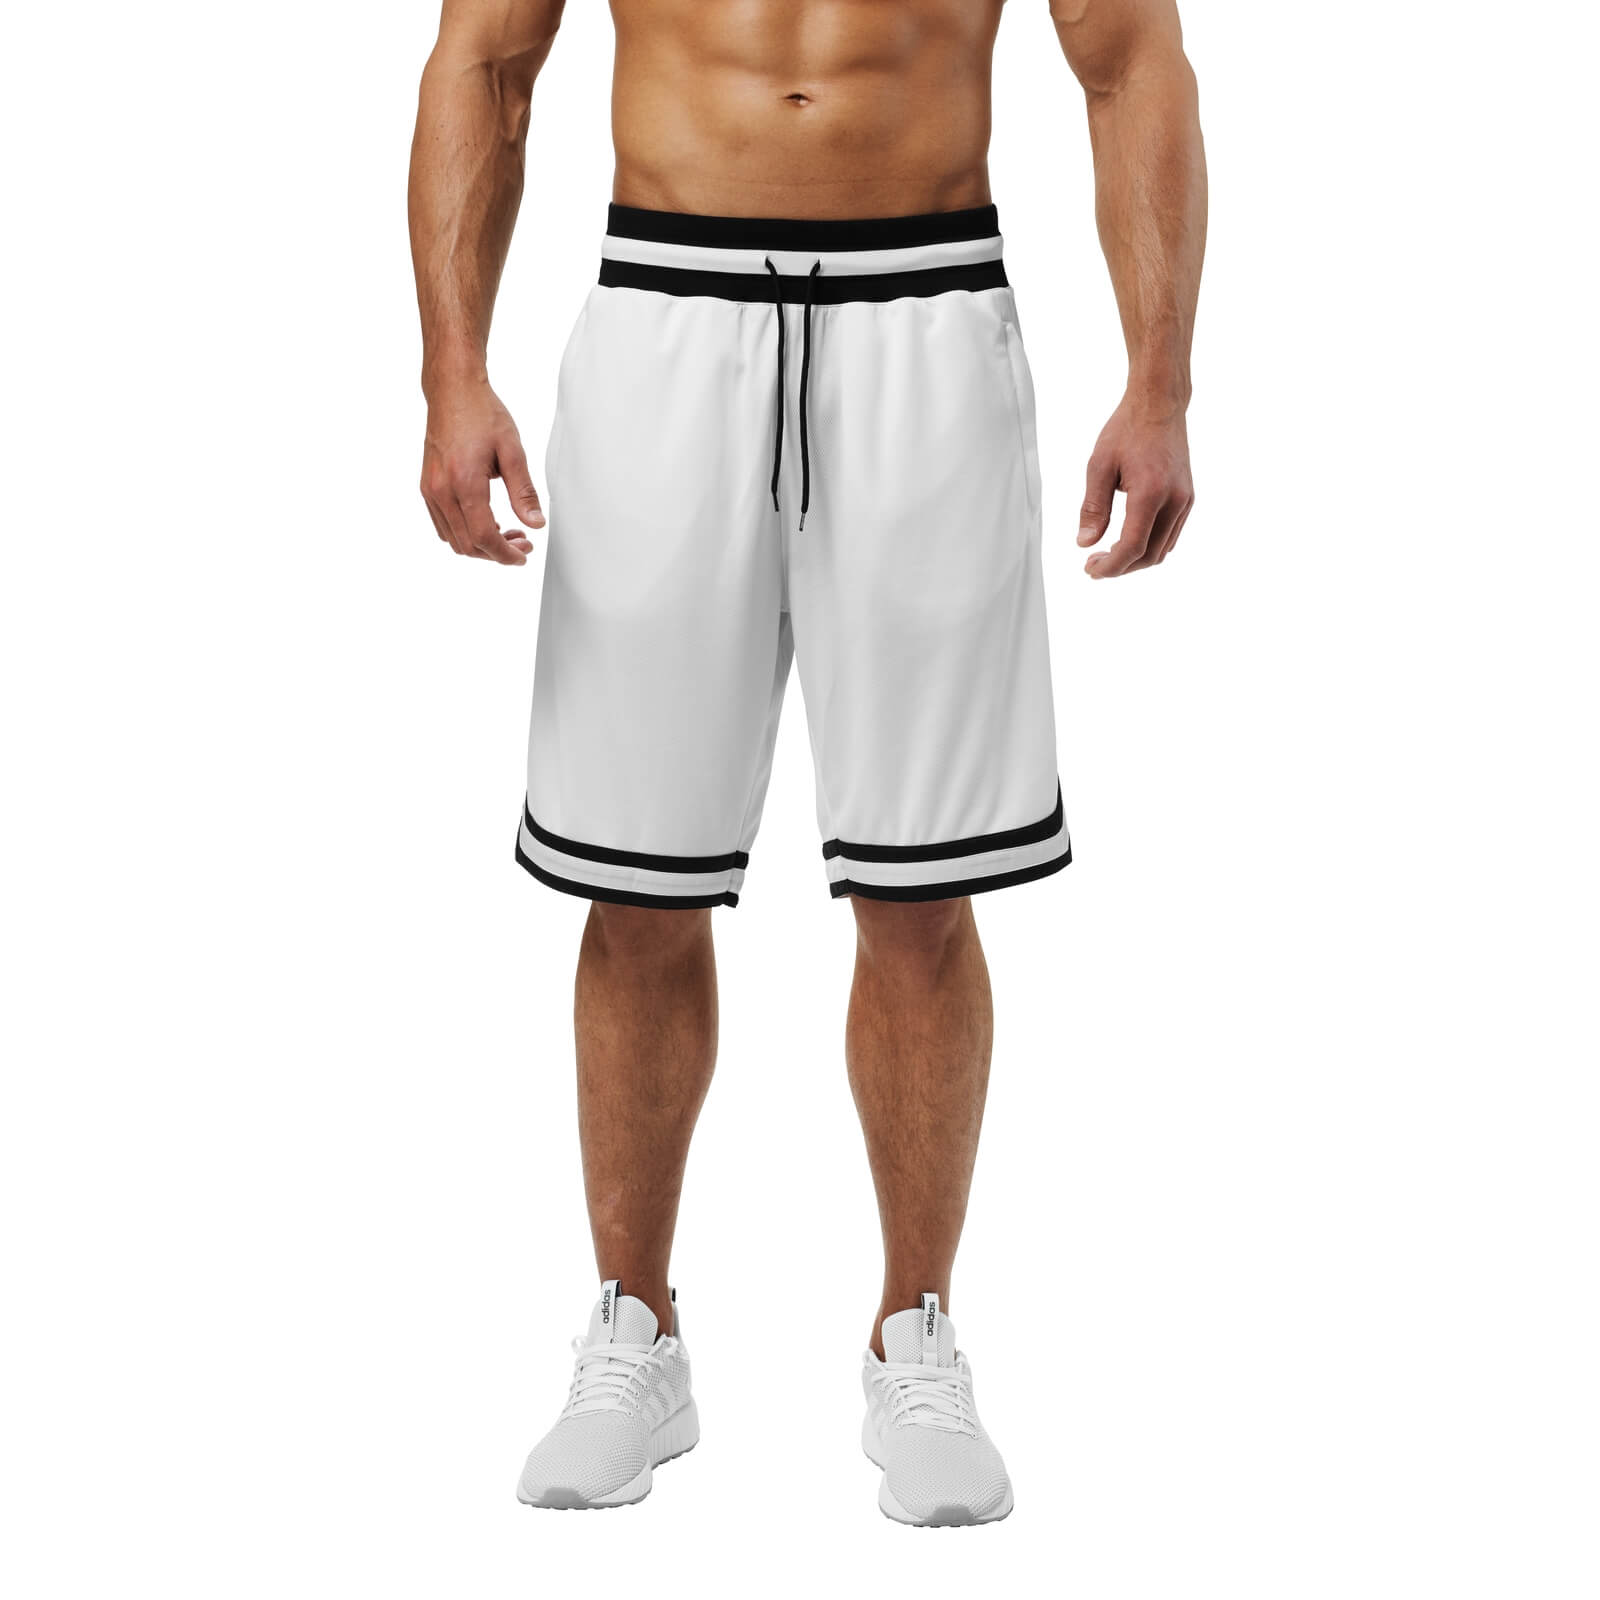 Sjekke Harlem Shorts, white, Better Bodies hos SportGymButikken.no